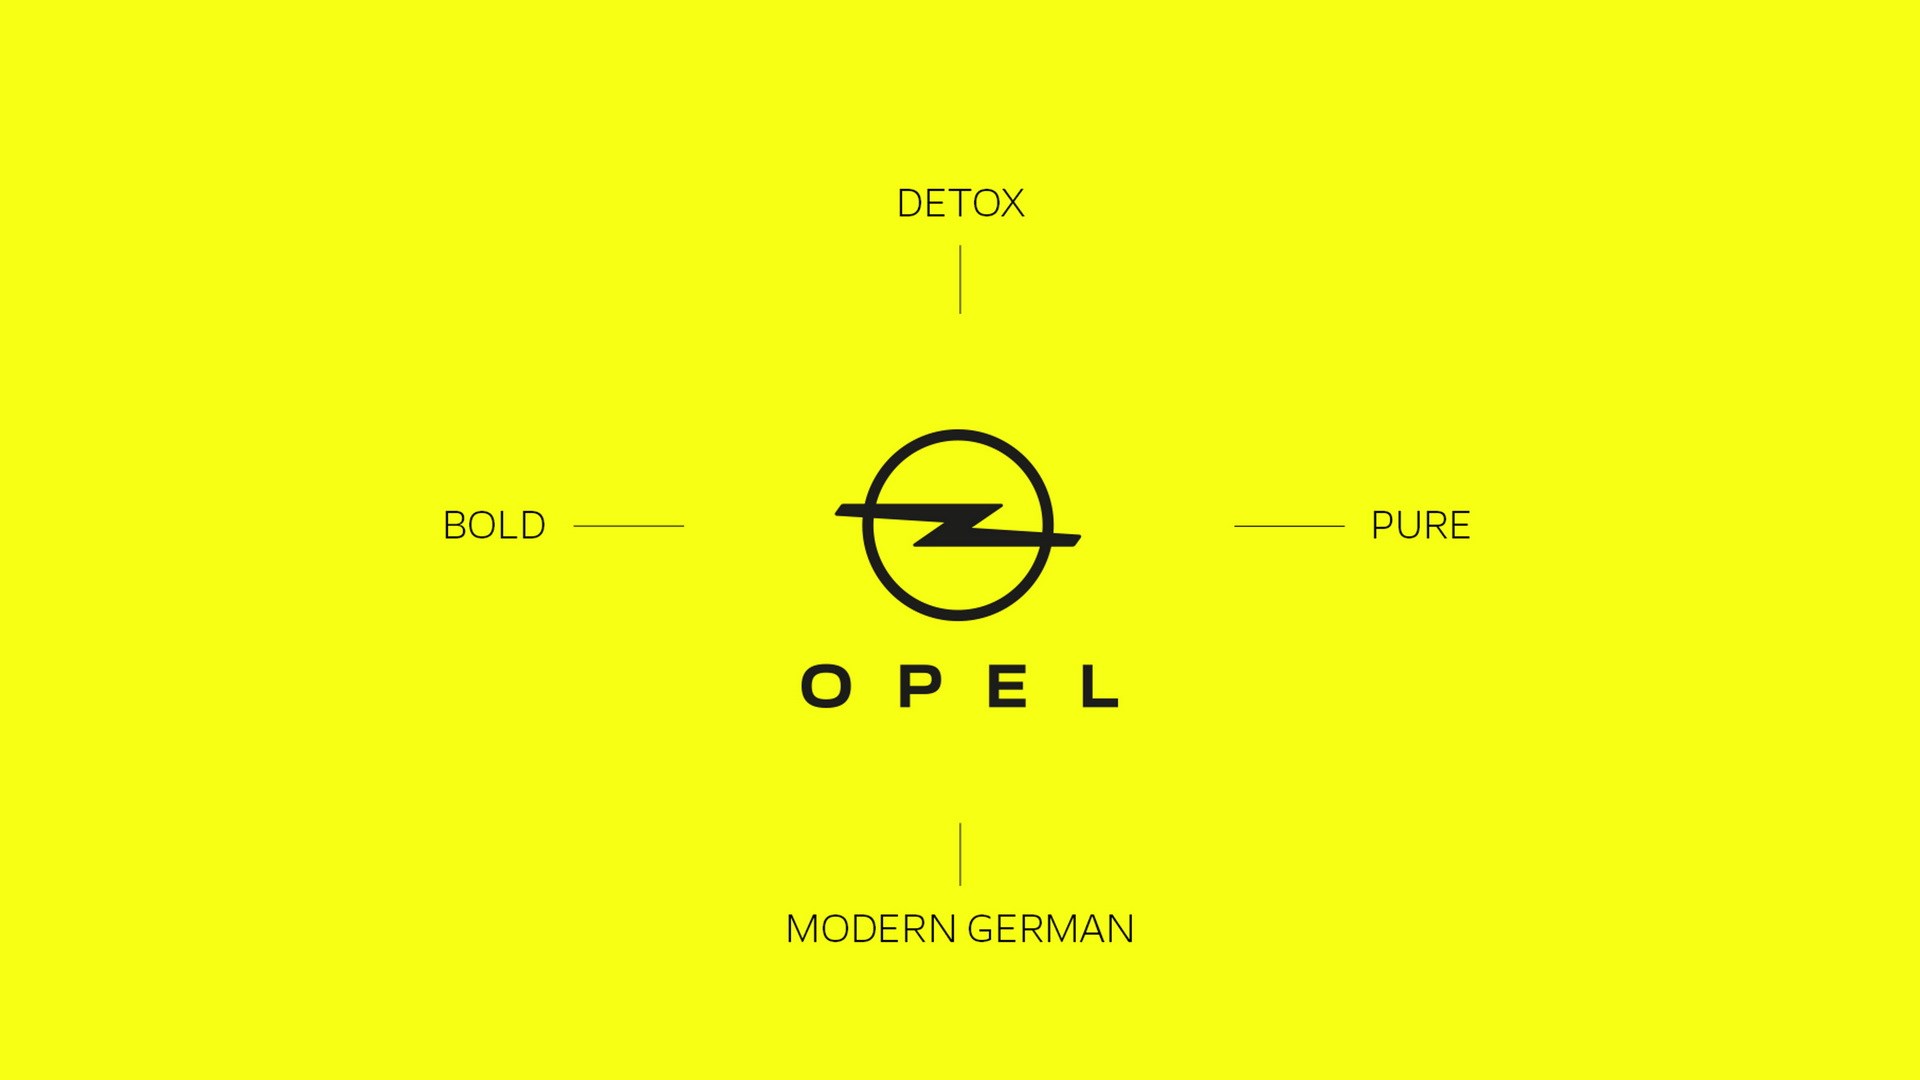 Opel'in kurumsal kimliği ve logosu 'dijital çağ' için yenilendi